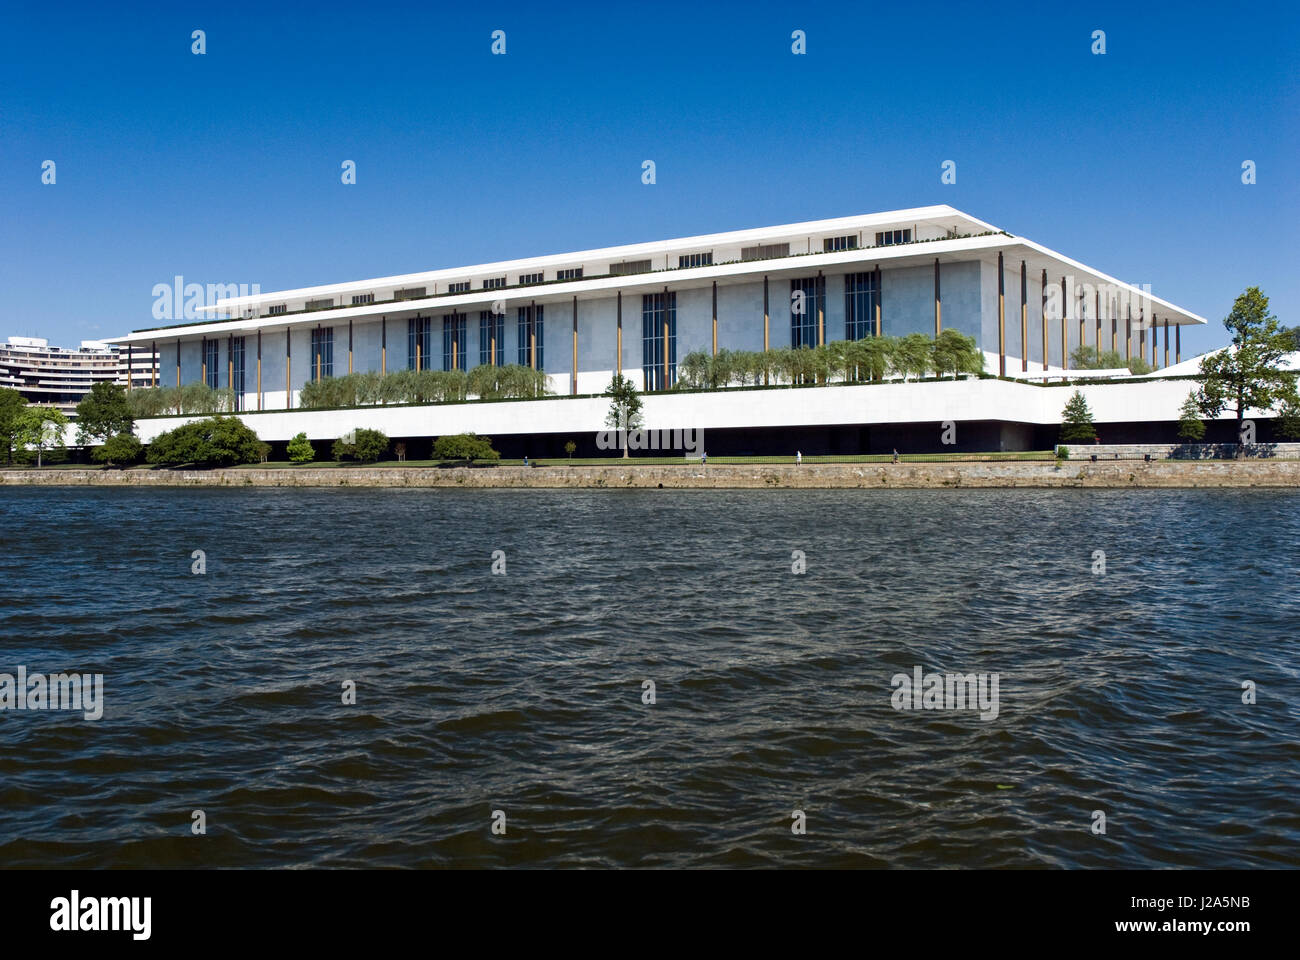 Le John F. Kennedy Center for the Performing Arts, vu à partir de la rivière Potomac à Washington, DC. Banque D'Images